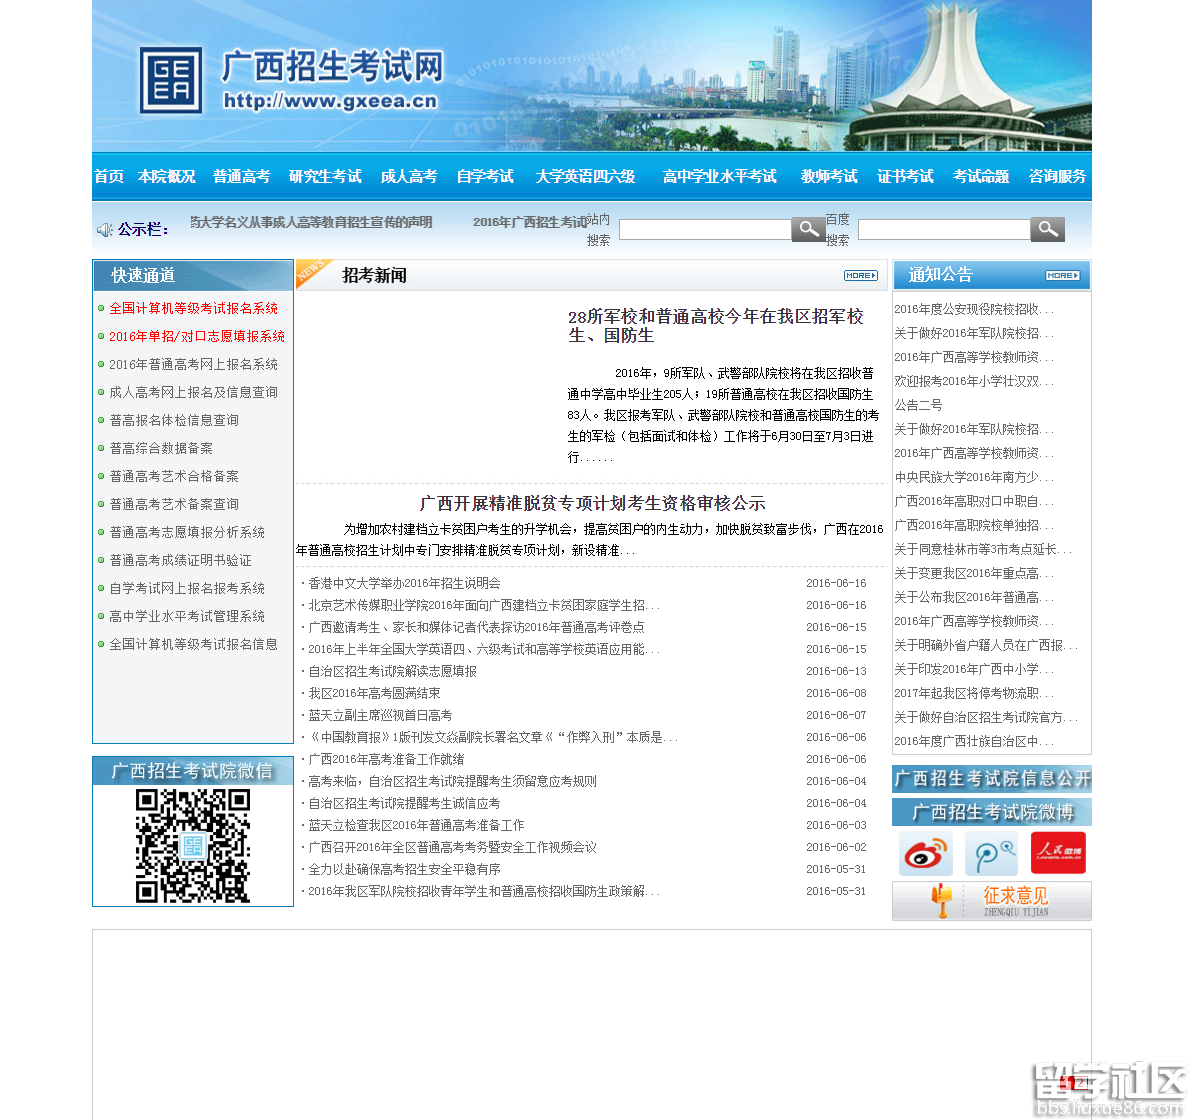 2016年广西高考志愿填报系统:www.gxeea.cn的